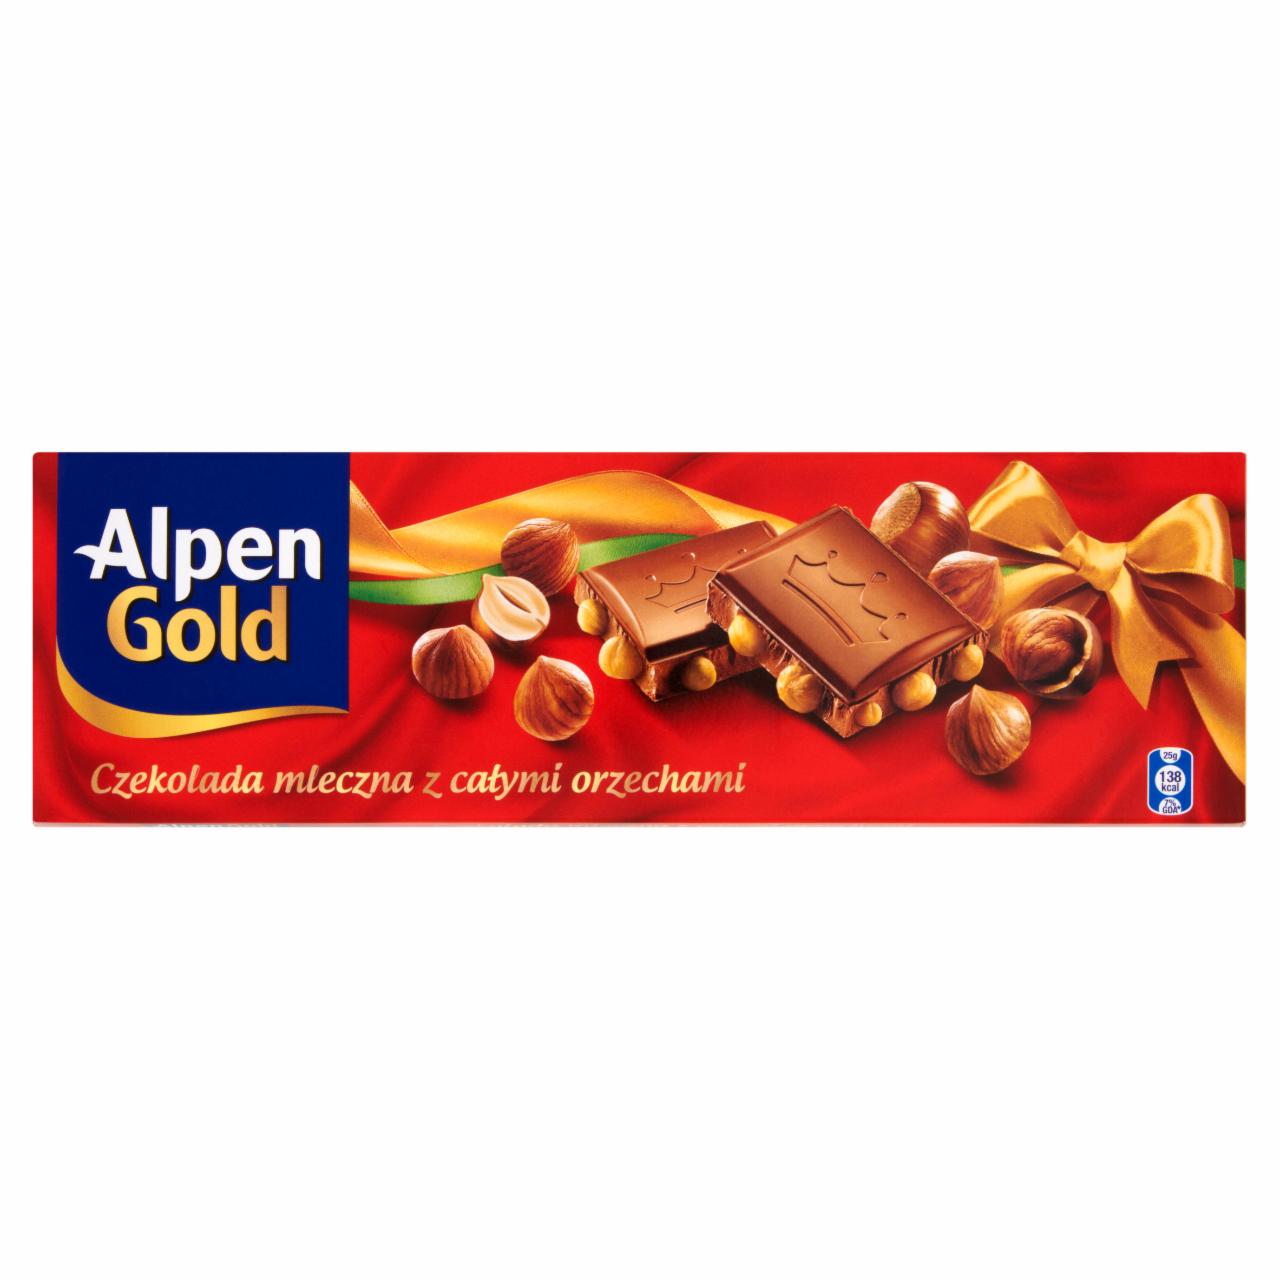 Zdjęcia - Alpen Gold Czekolada mleczna z całymi orzechami 200 g